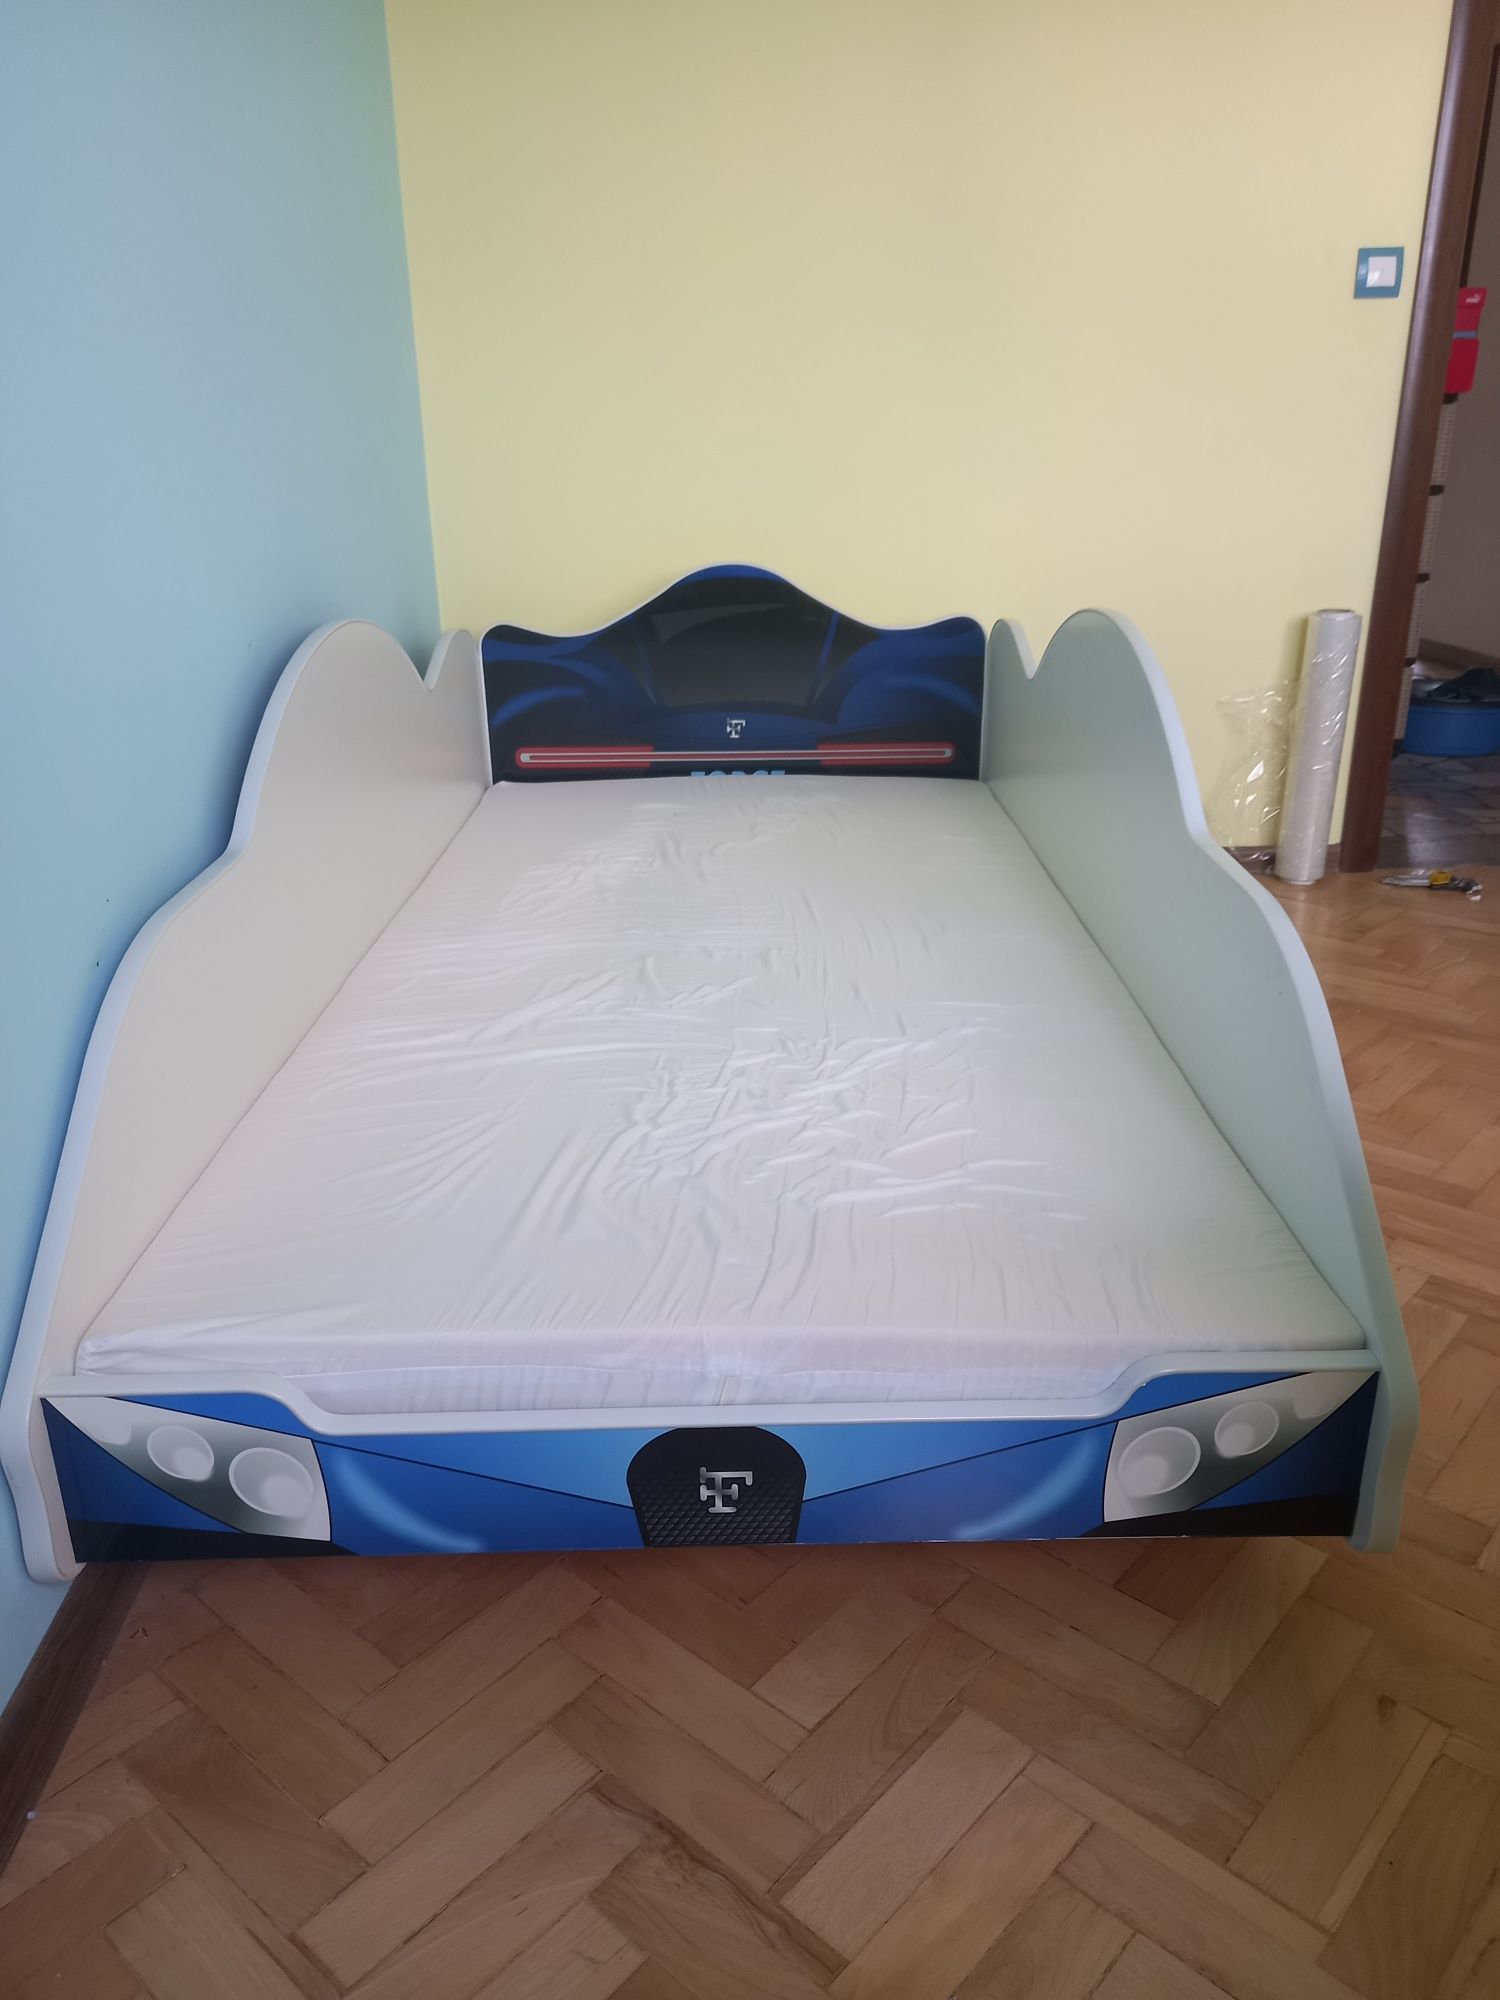 Ново детско легло спортна кола